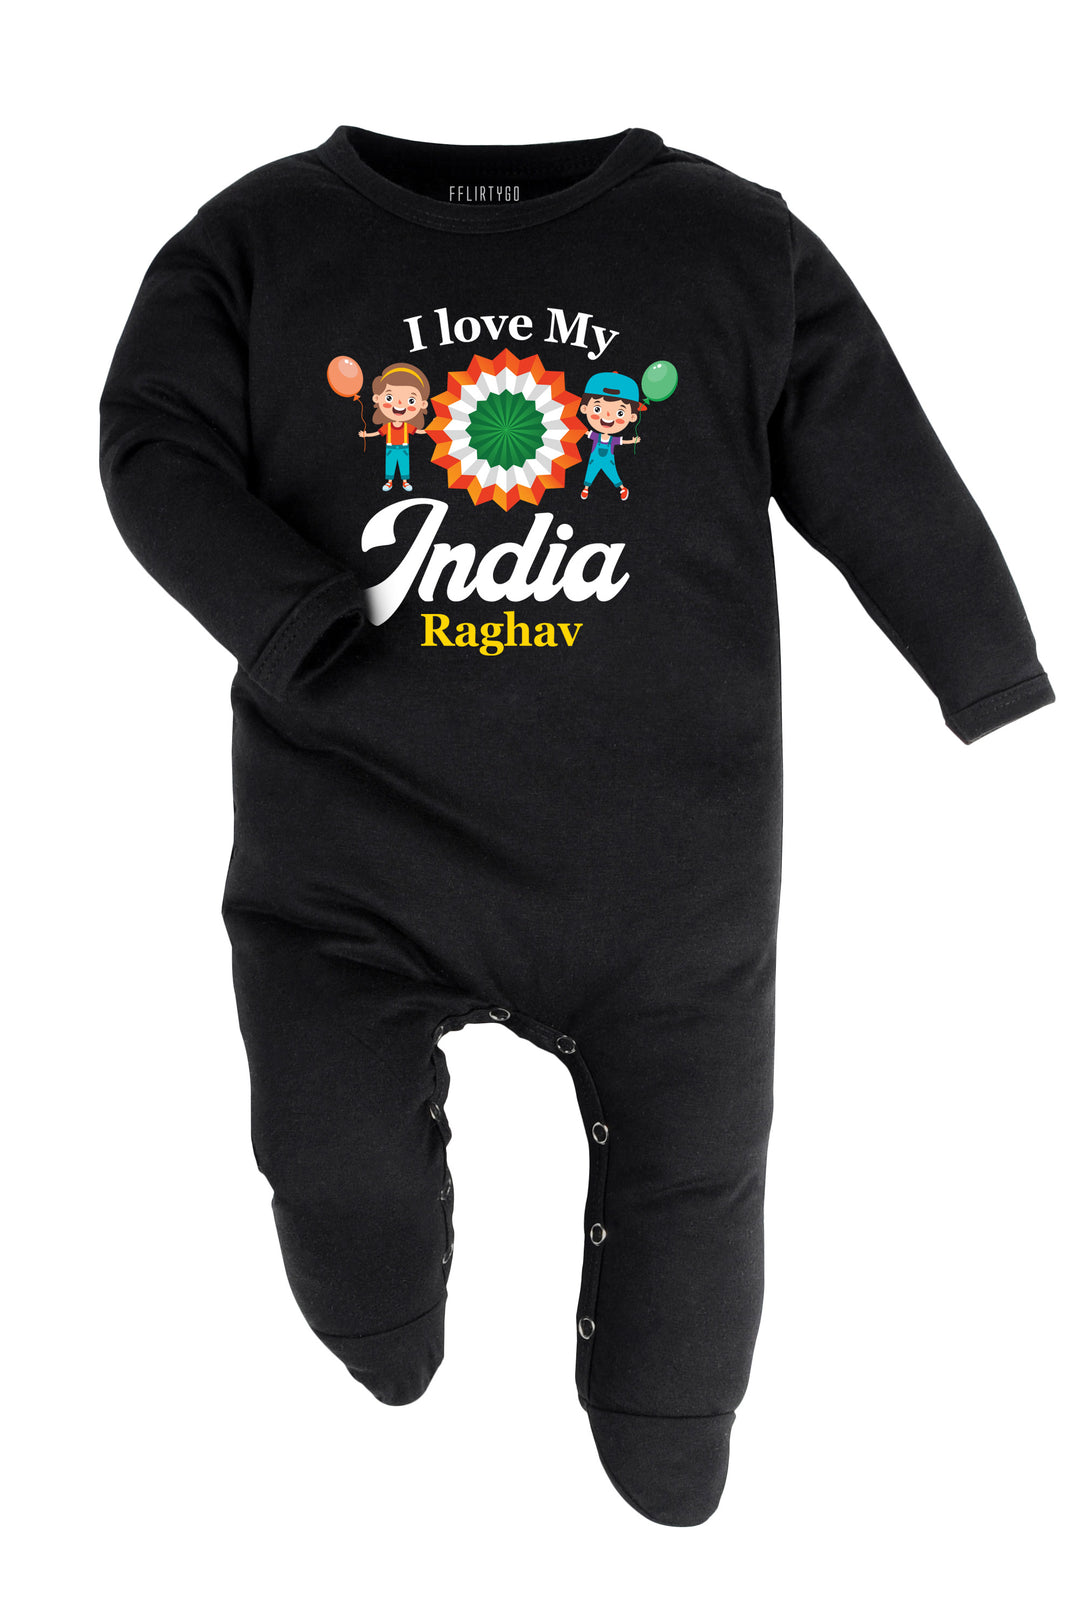 I Love My India Baby Romper | Onesies w/Custom Name